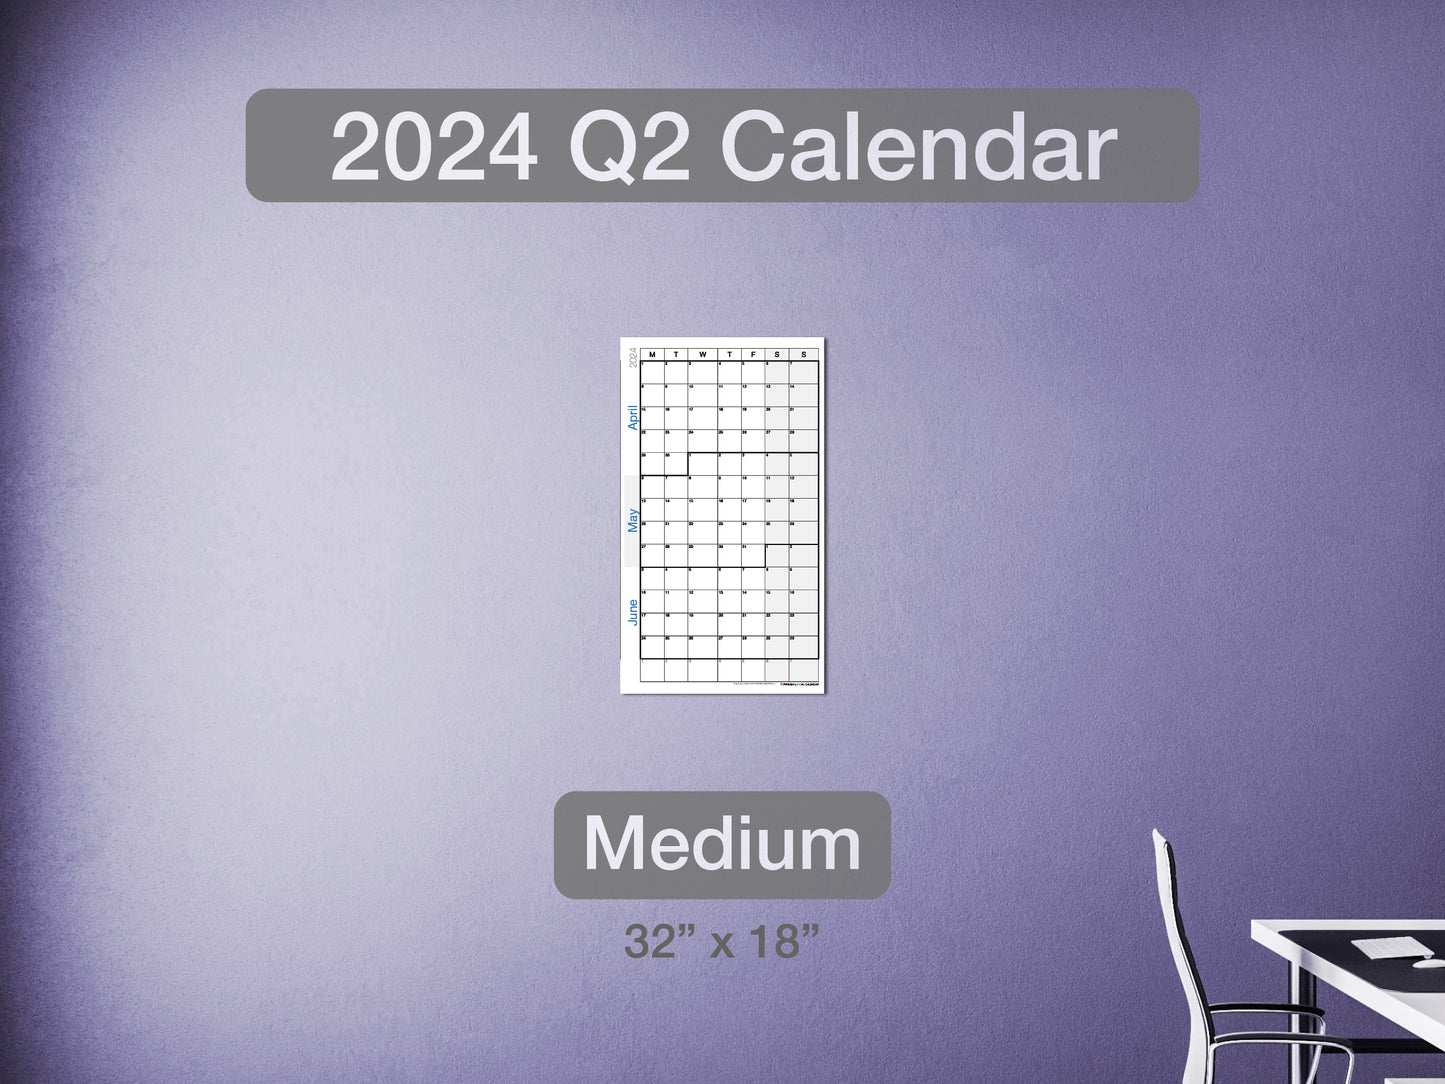 2024 Q2 Calendar Medium